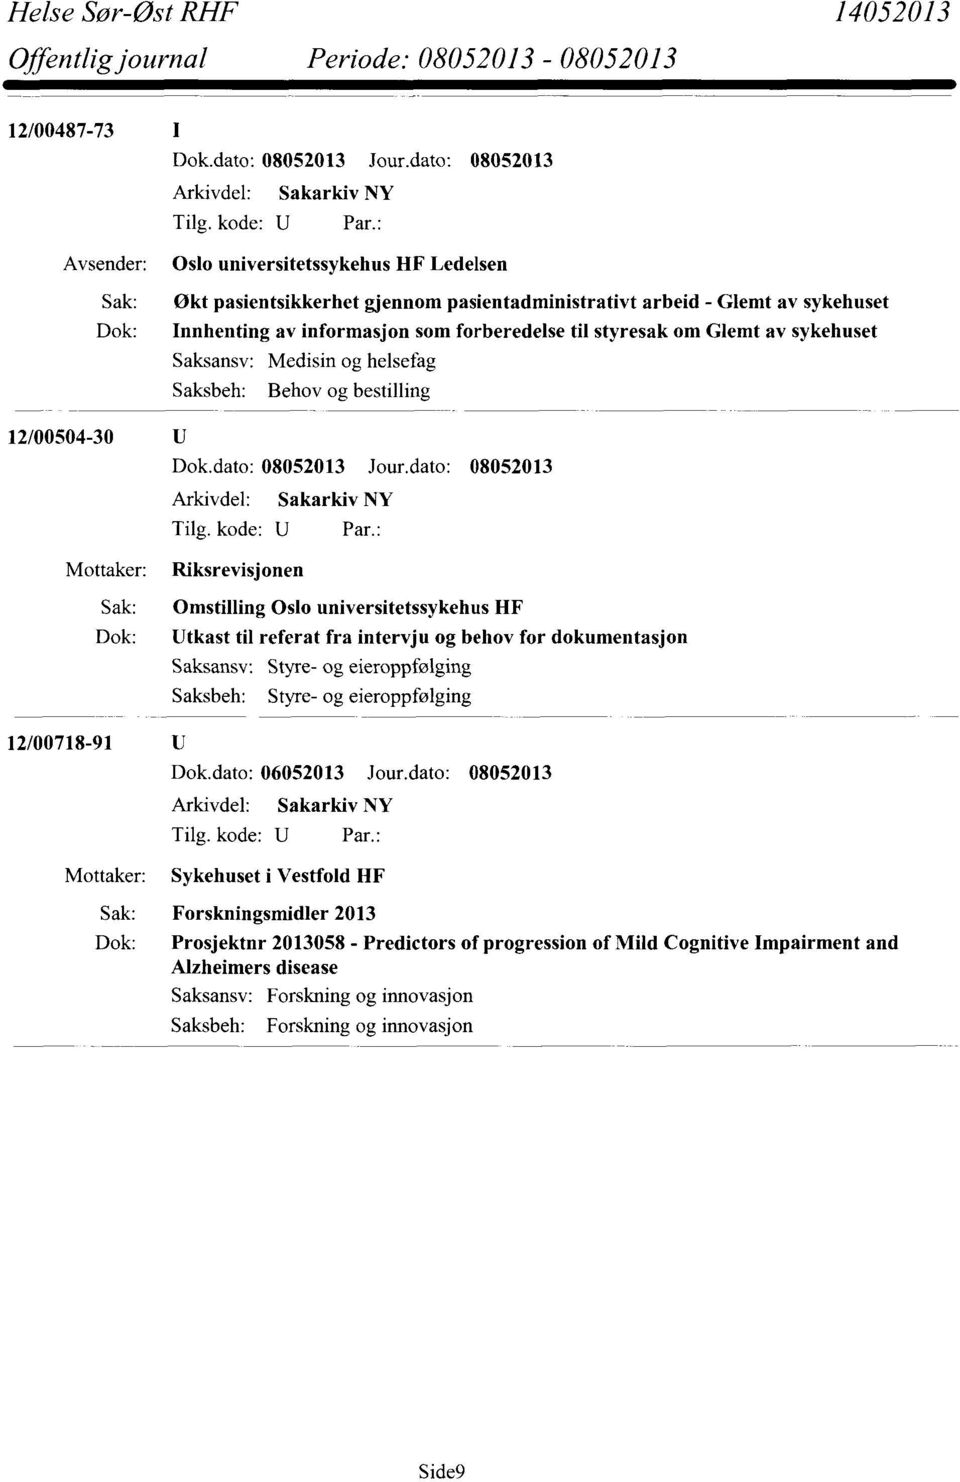 Omstilling Oslo universitetssykehus HF Utkast til referat fra intervju og behov for dokumentasjon Styre- og eieroppfølging Styre- og eieroppfølging Sykehuset i Vestfold